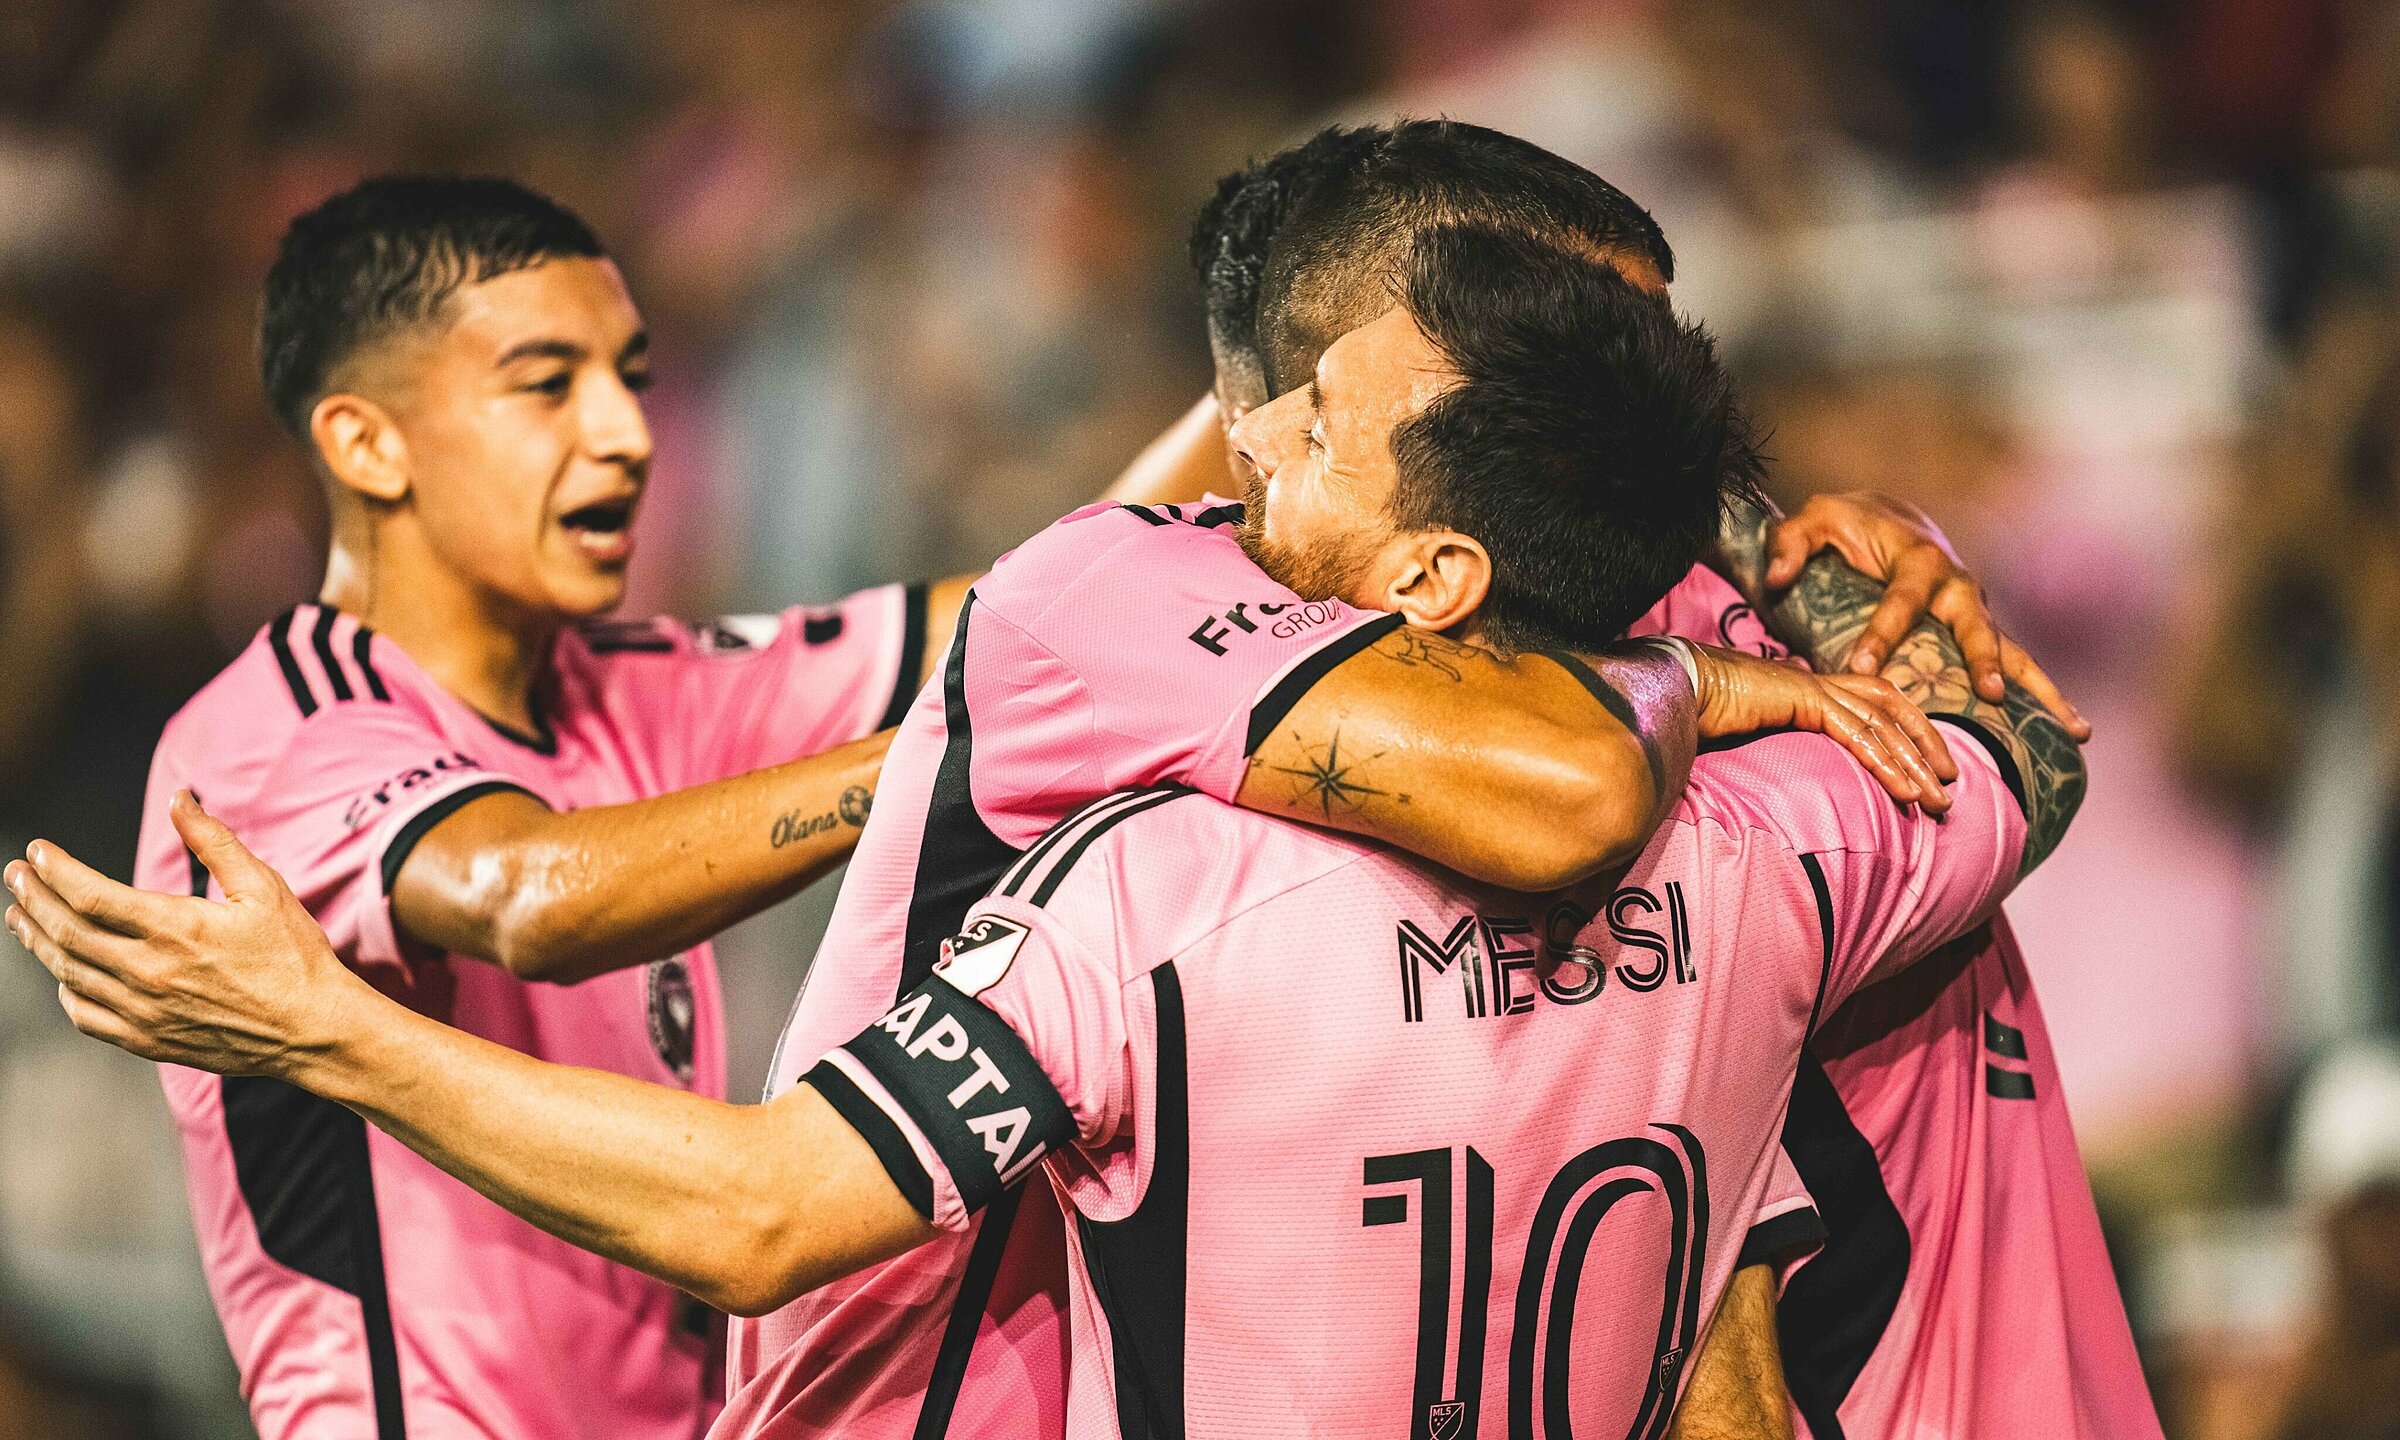 Messi tỏa sáng giúp Inter Miami giữ đỉnh bảng - VnExpress Thể thao